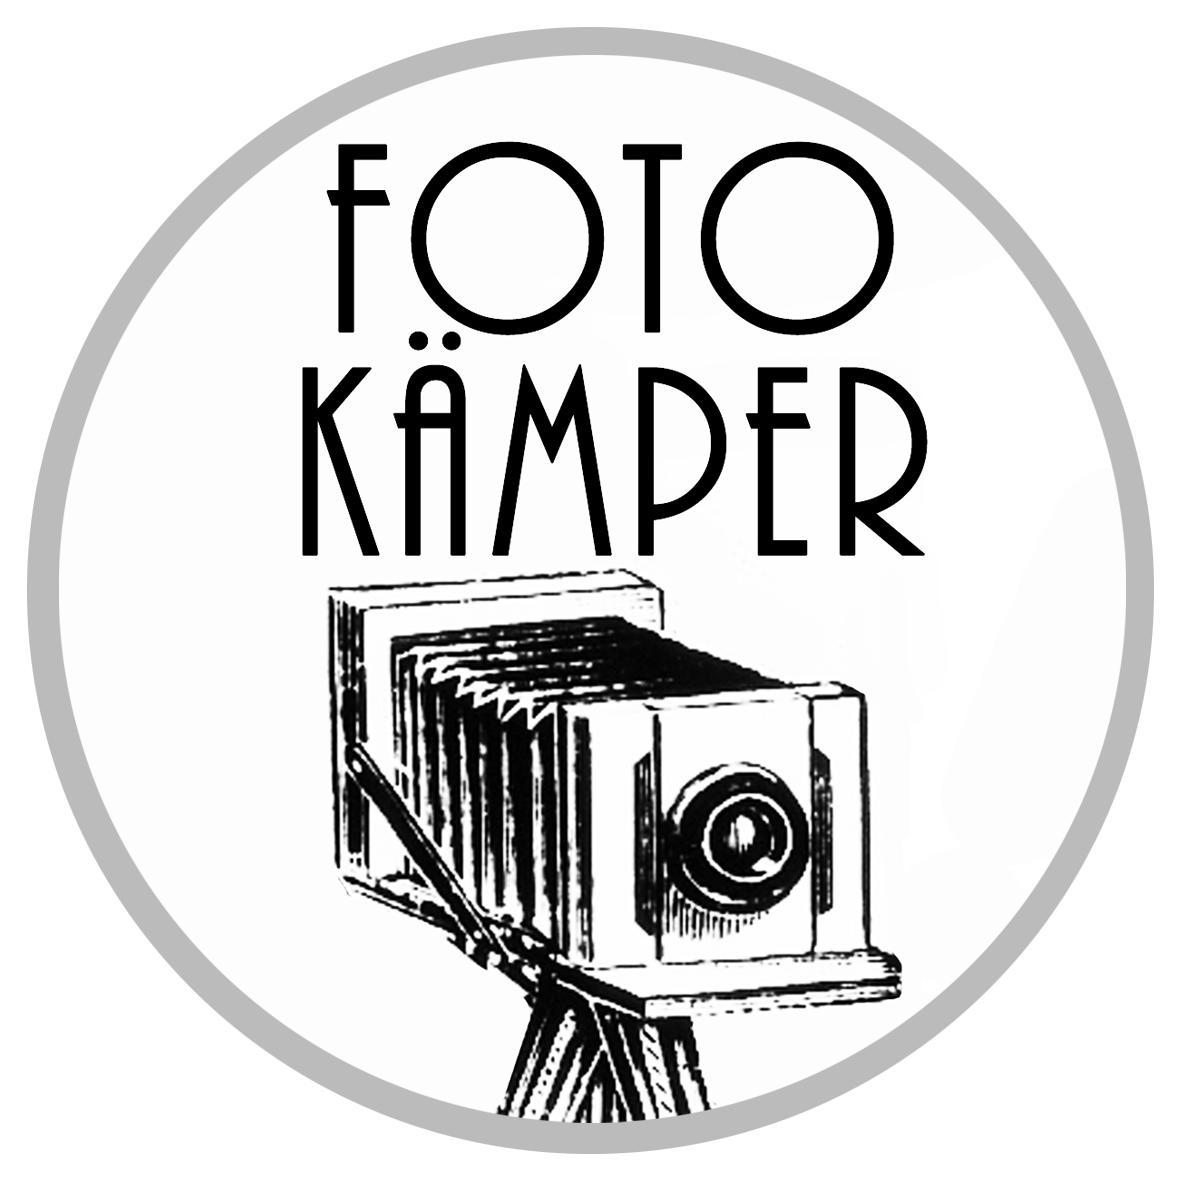 (c) Foto-kaemper.de